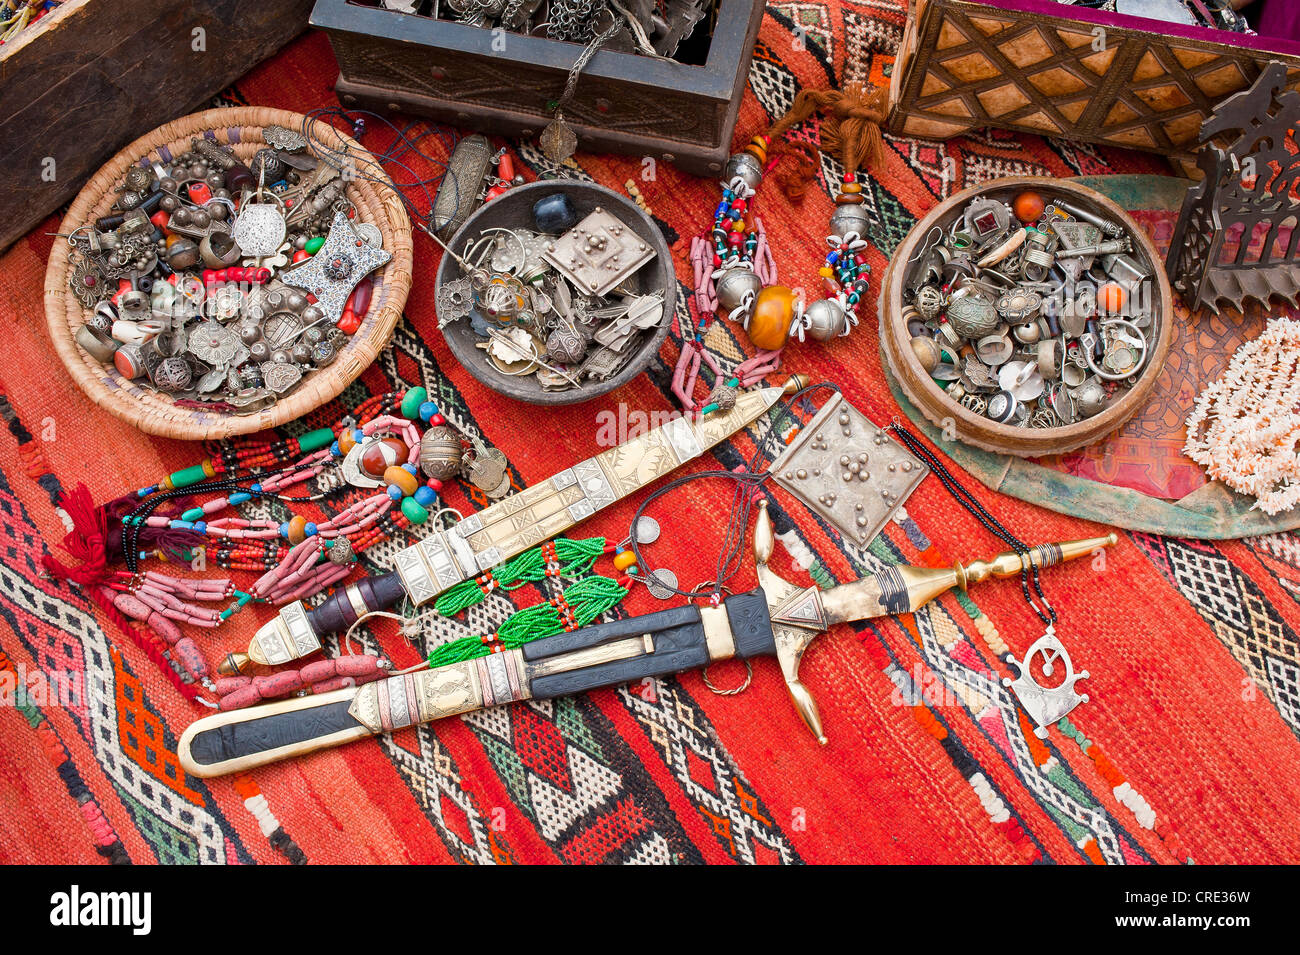 Gioielli orientali, piccoli scrigni di un tesoro e ornato Touareg coltelli sono sparsi su un tappeto in un souk o bazaar, Marocco, Africa Foto Stock